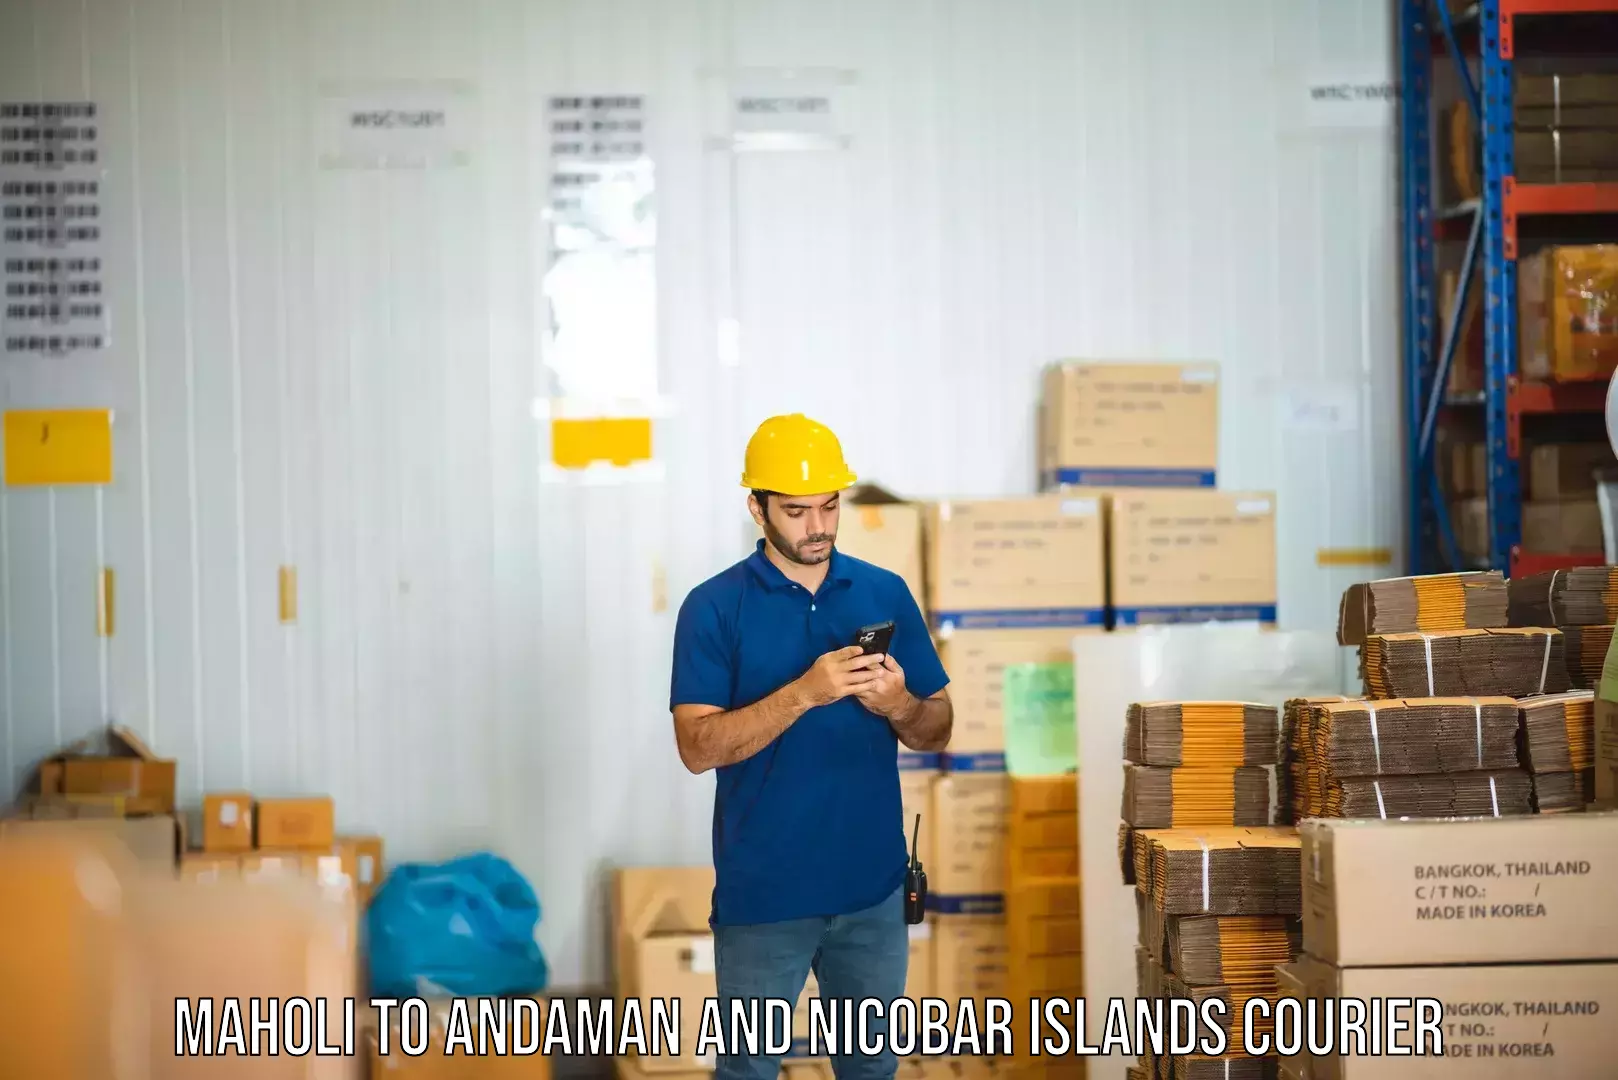 Global logistics network Maholi to Andaman and Nicobar Islands